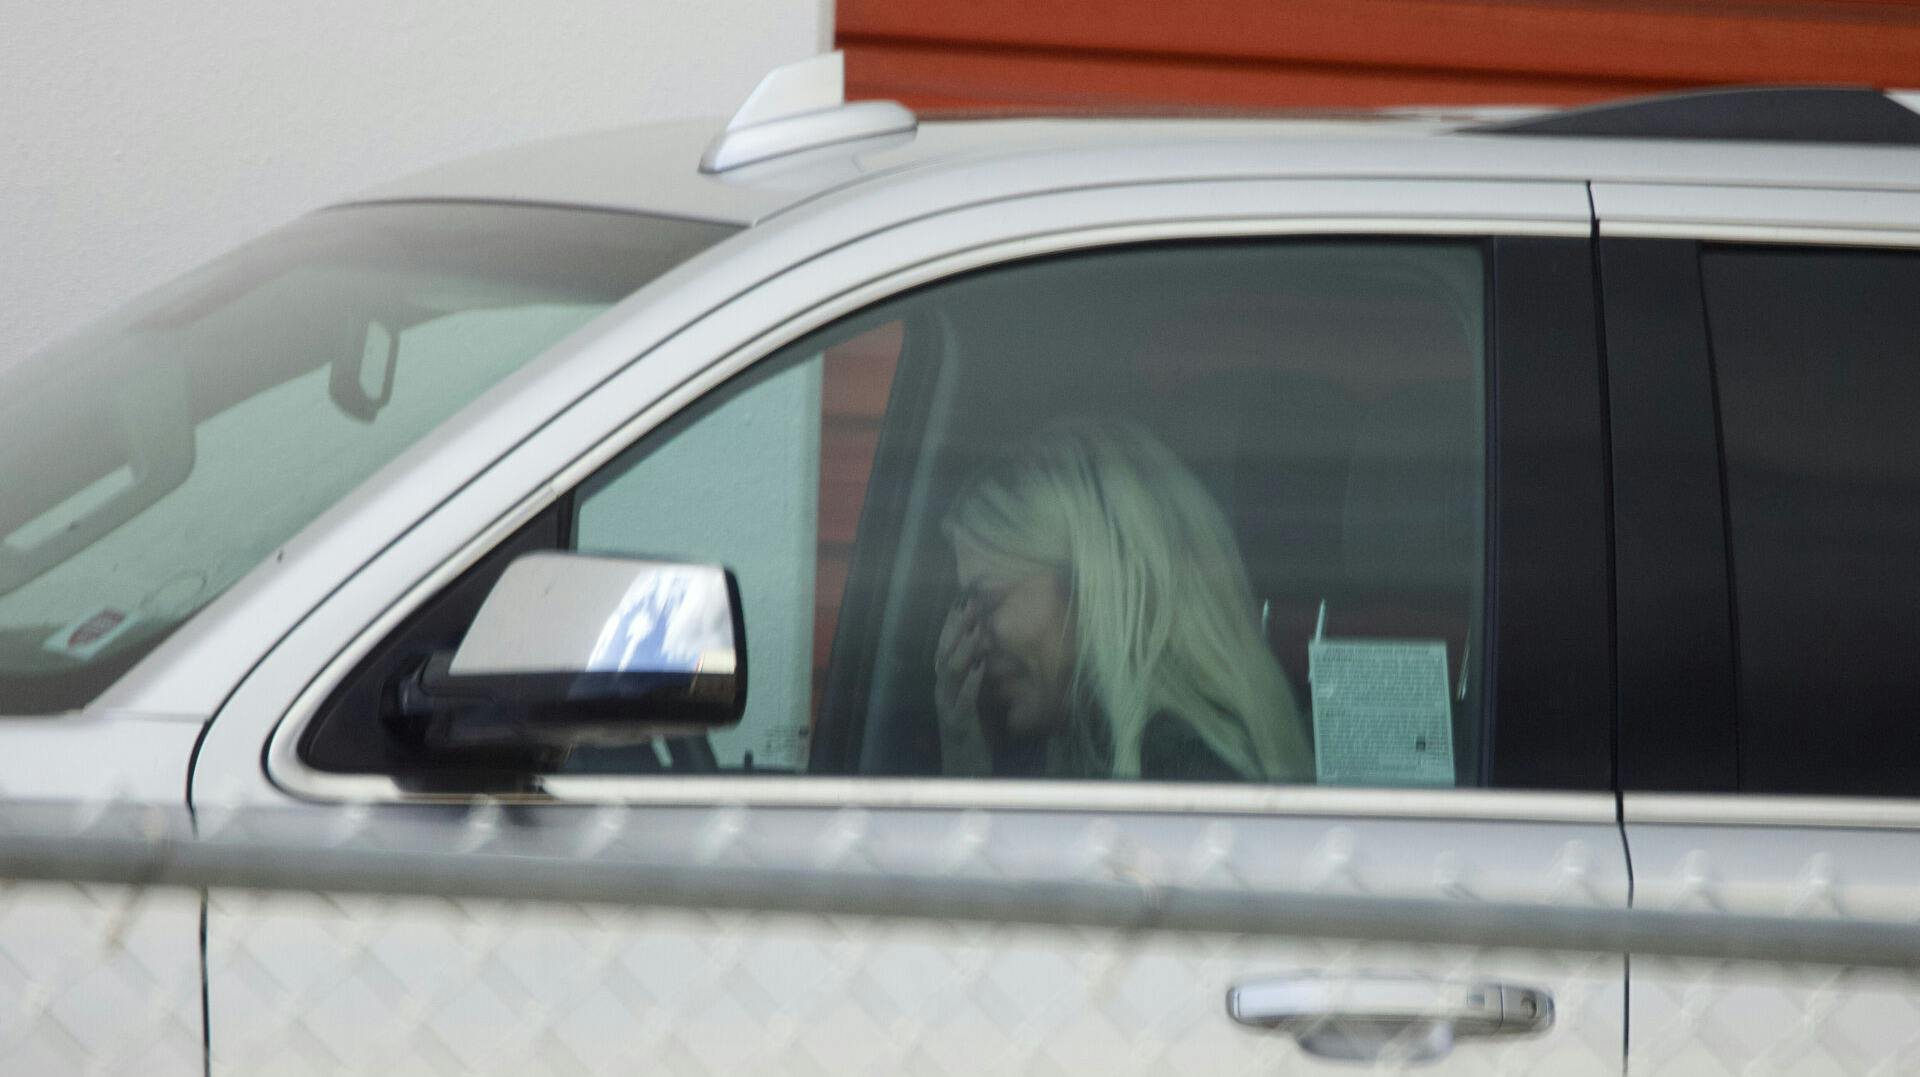 Tori Spelling er i tårer efter sammenstødet med sin ex-mand Dean McDermott. Her sidder hun i bilen foran lageret, hvor deres ejendomme er opmagasineret.